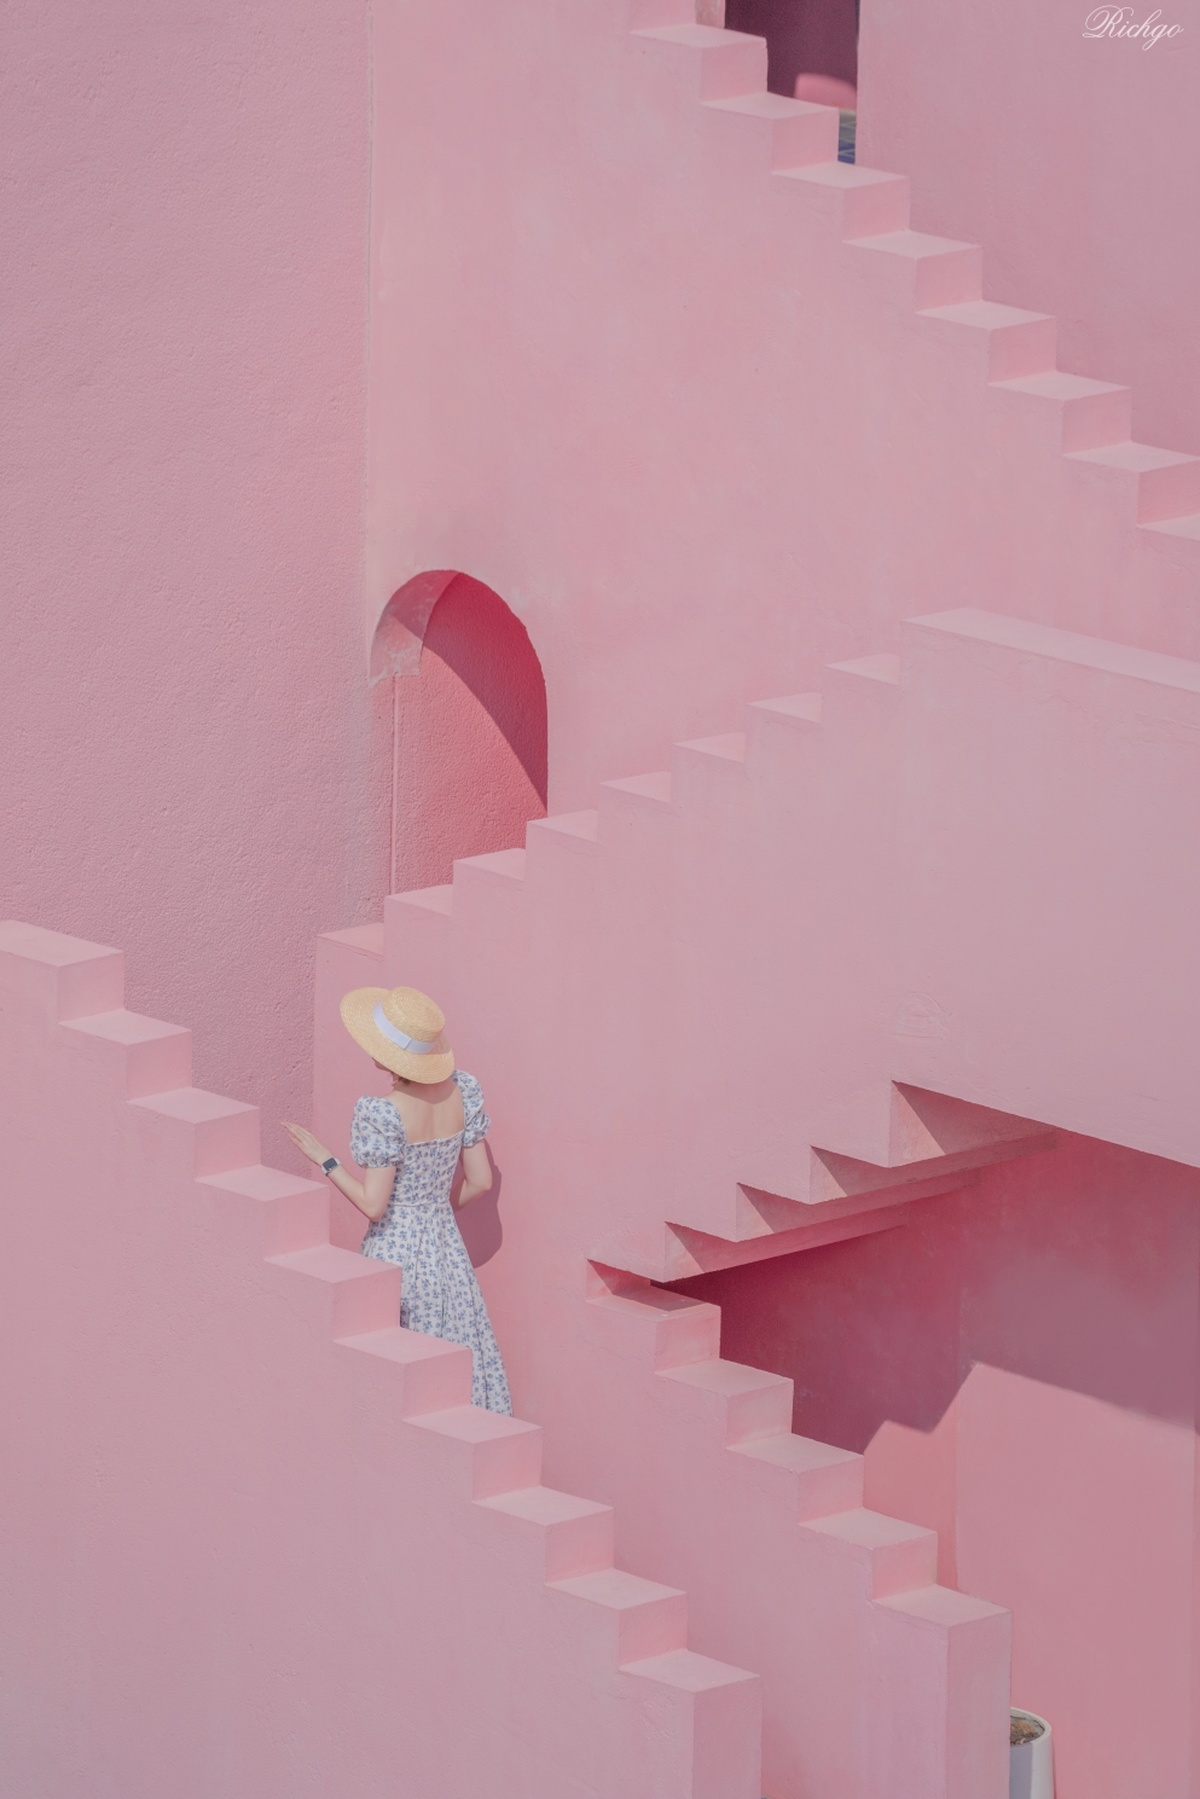 一个人爬上粉红色楼梯 一个女孩爬上粉红色墙壁的楼梯。